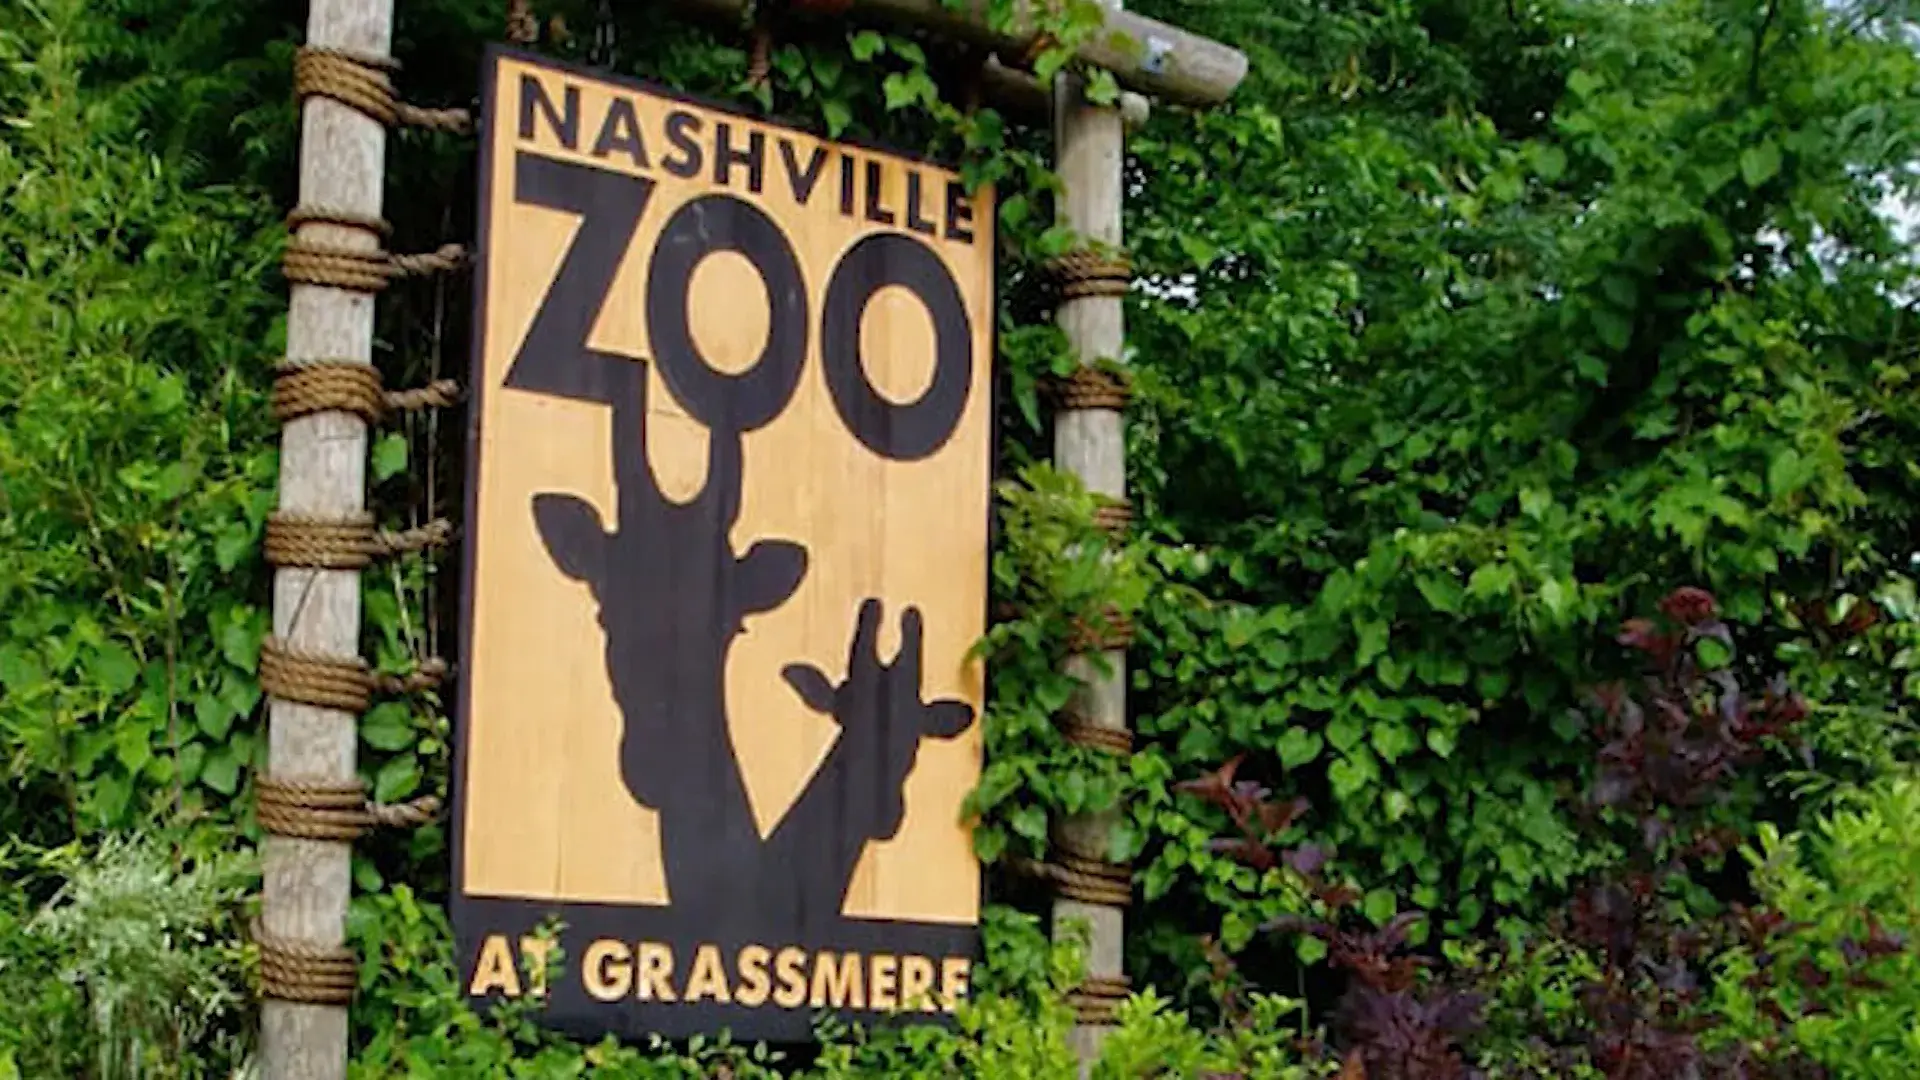 Nashville-zoo